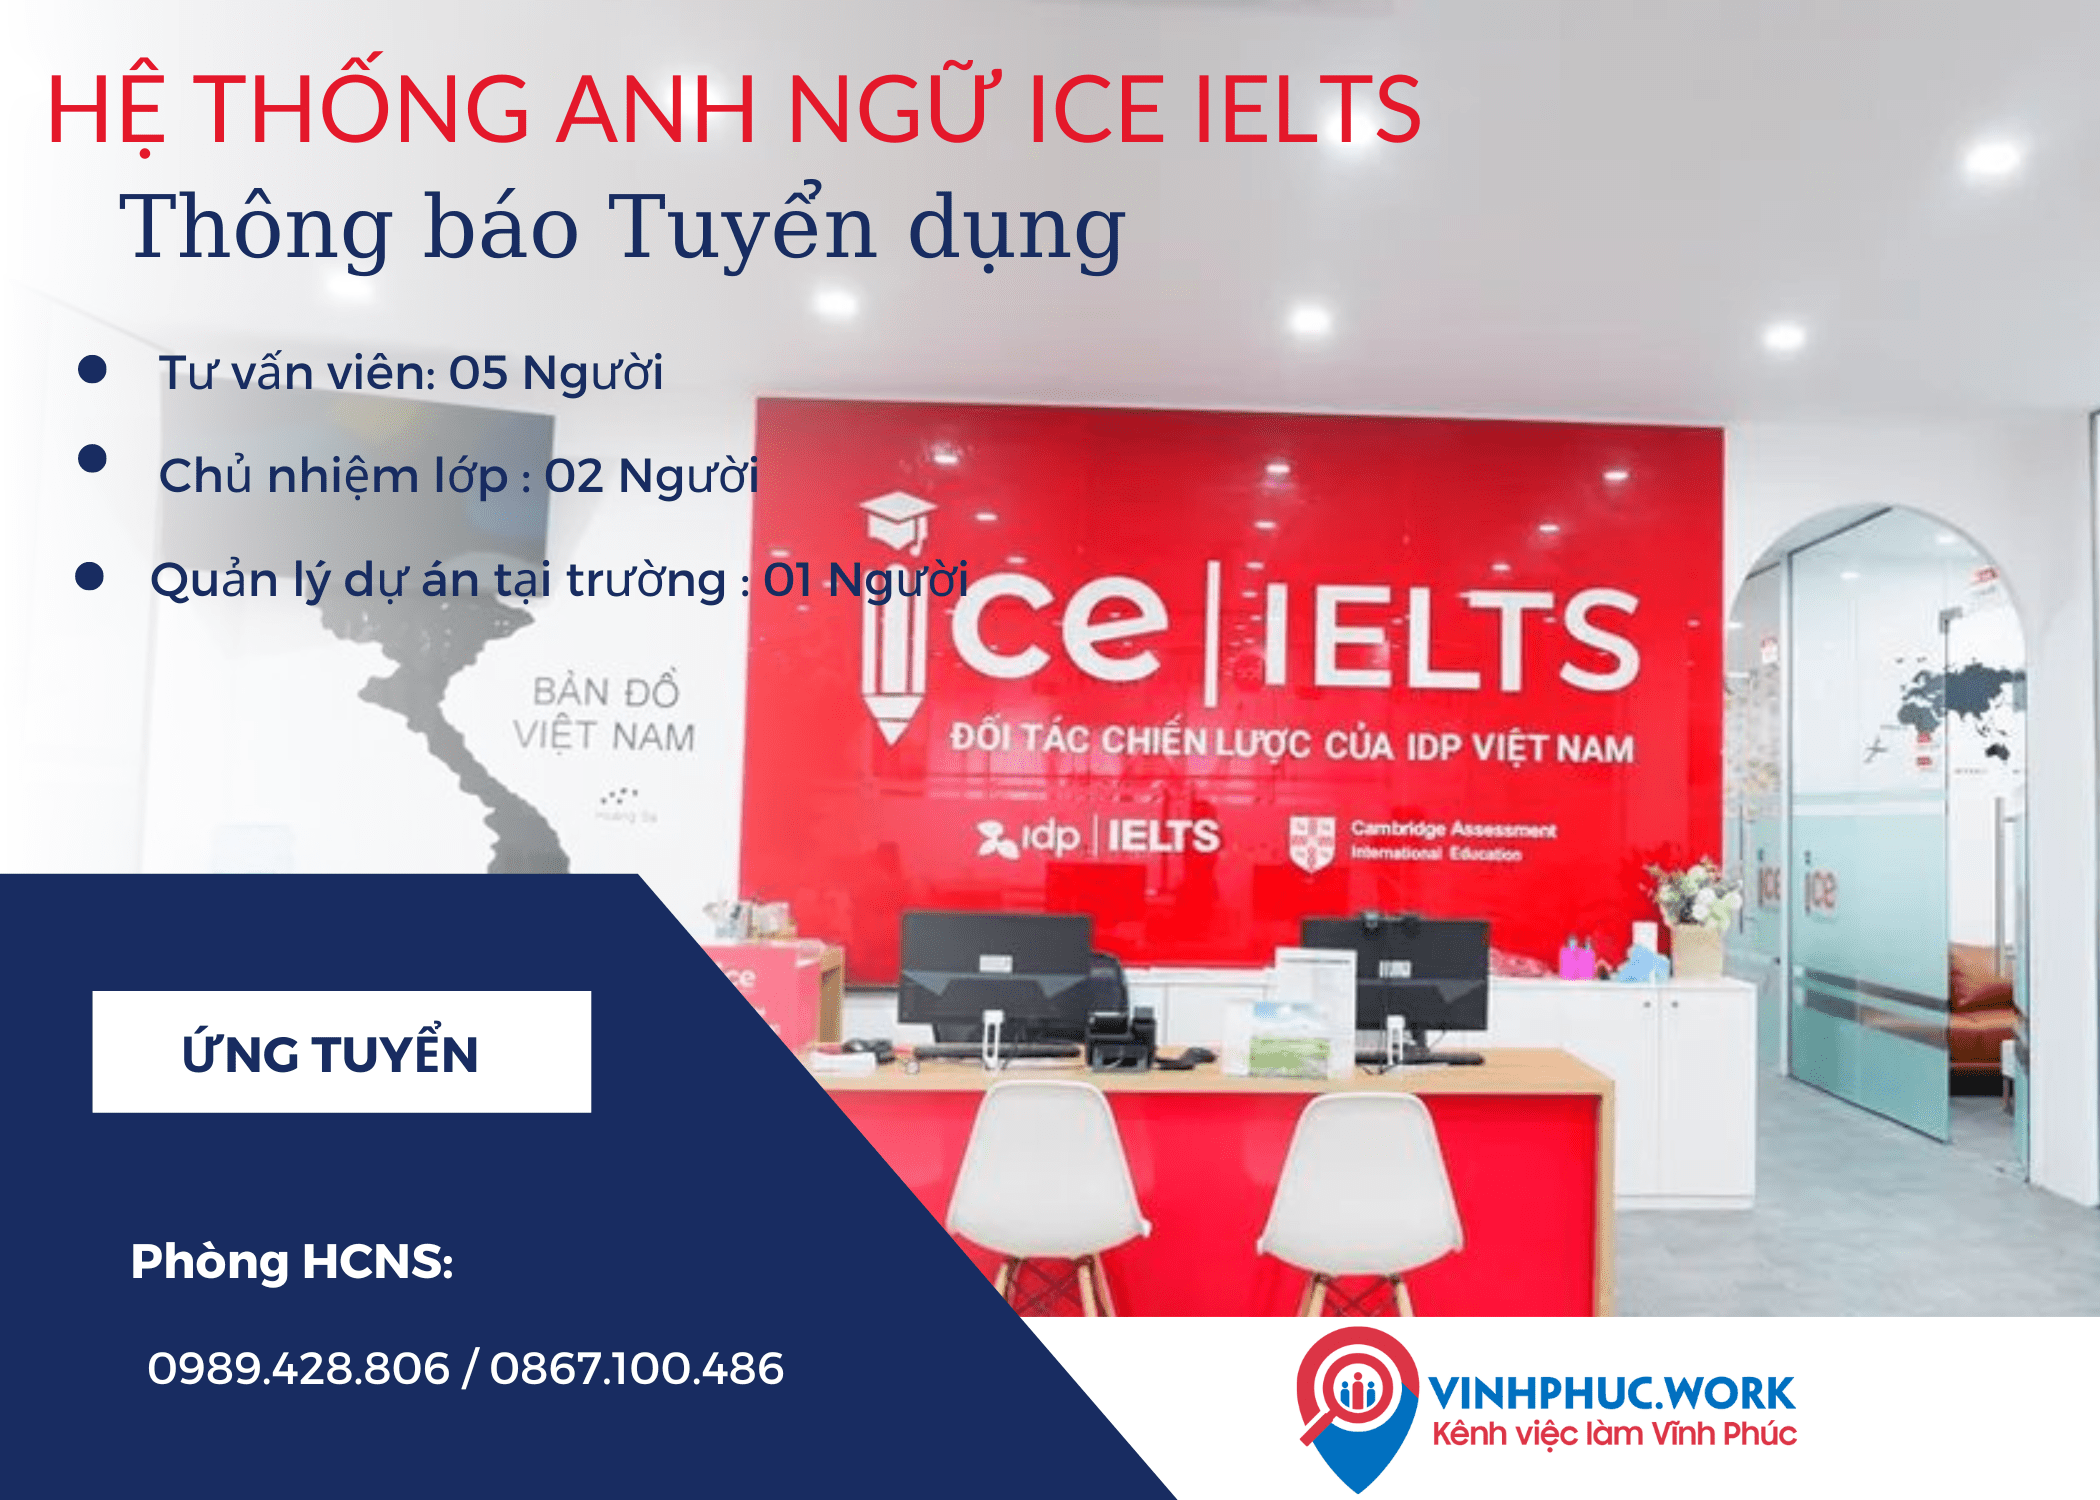 He Thong Anh Ngu Ice Ielts Thong Bao Tuyen Dung Thang 08 2022 2